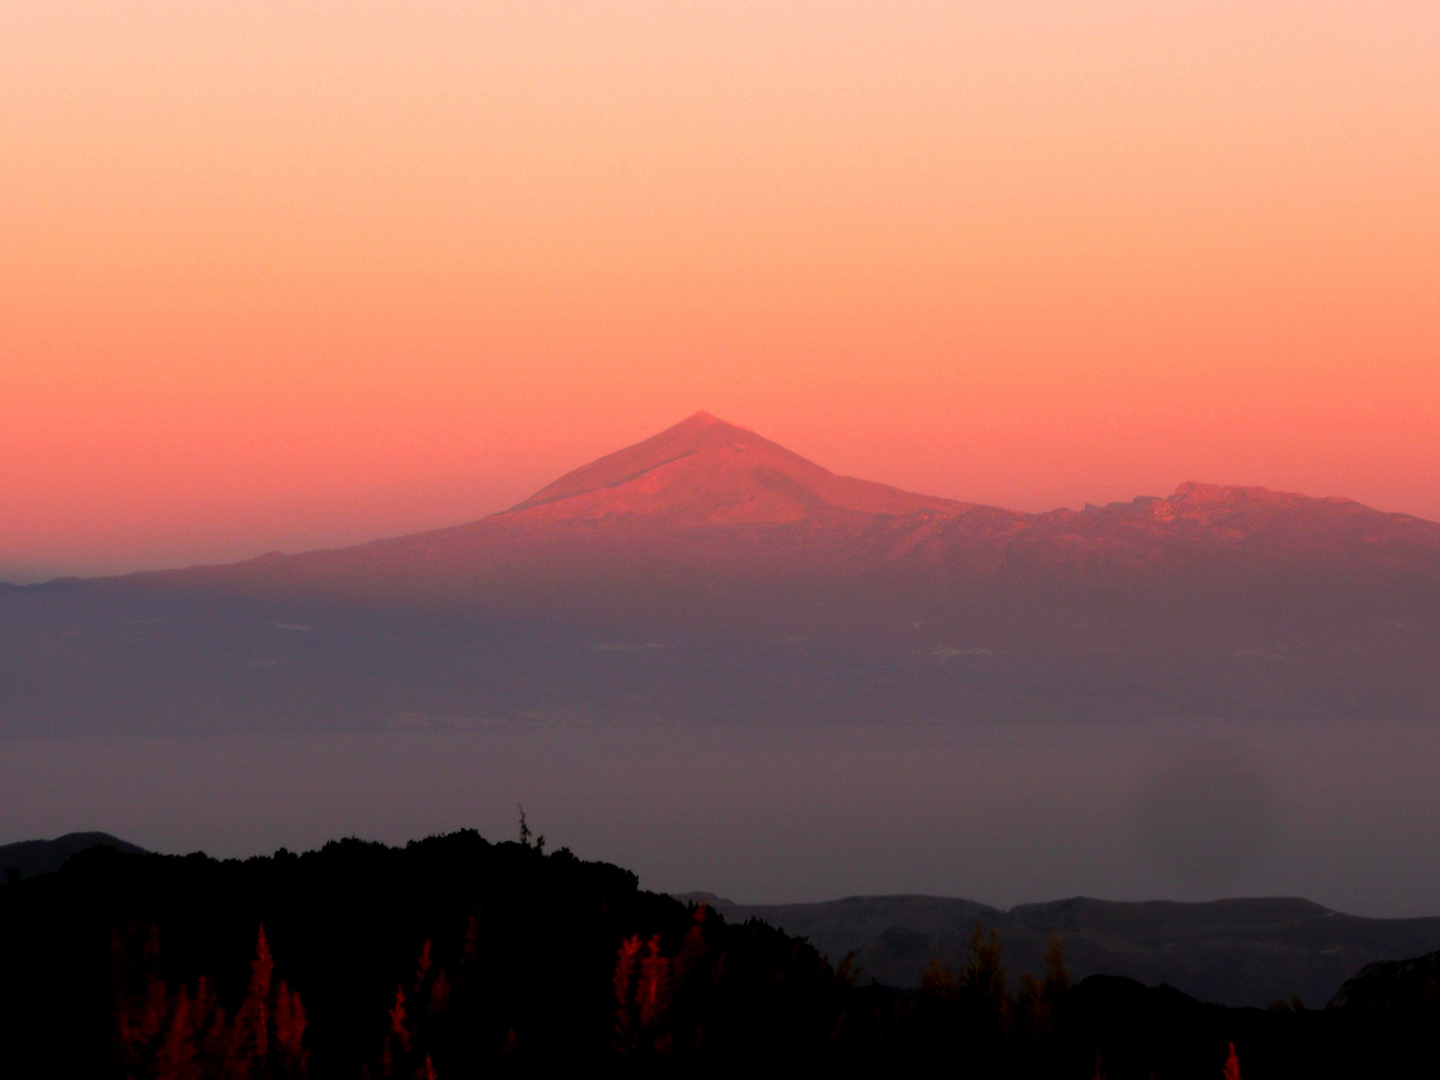 Sonnenuntergang auf dem Garajonay - Blick auf den Teide